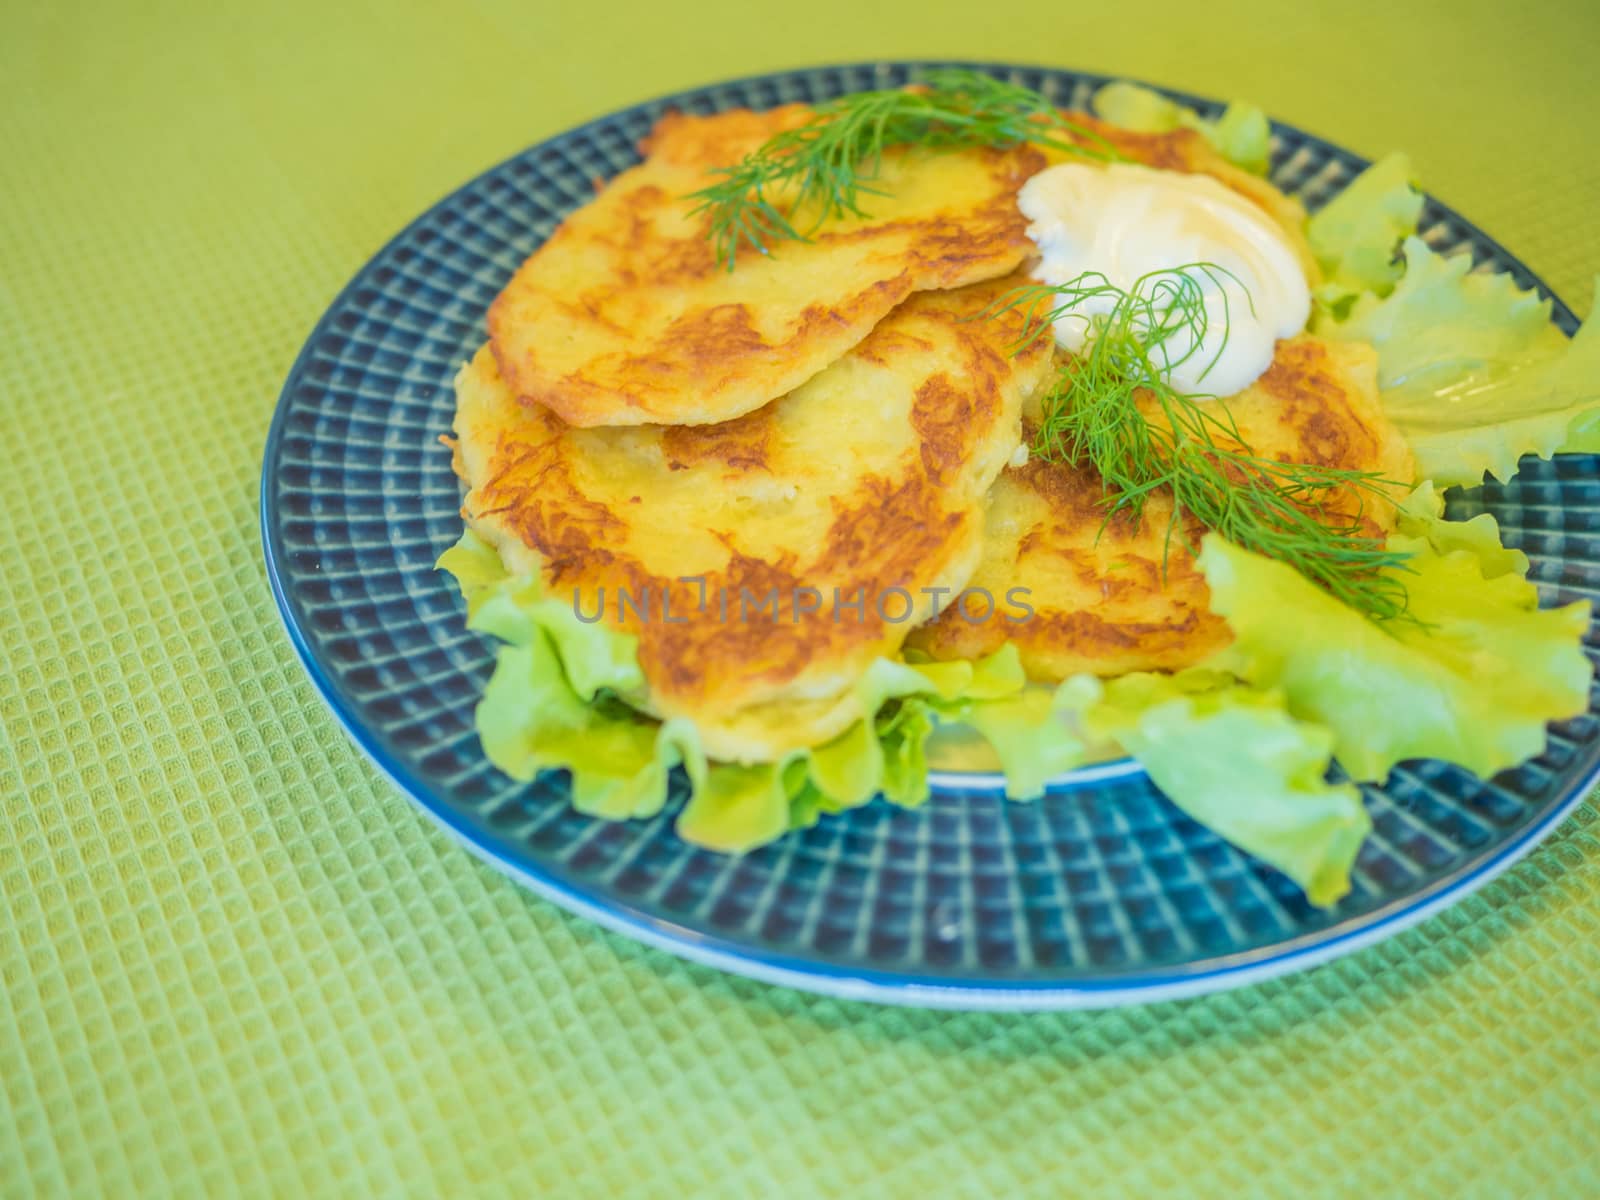 potato pankakes with cream frache and dill - draniki